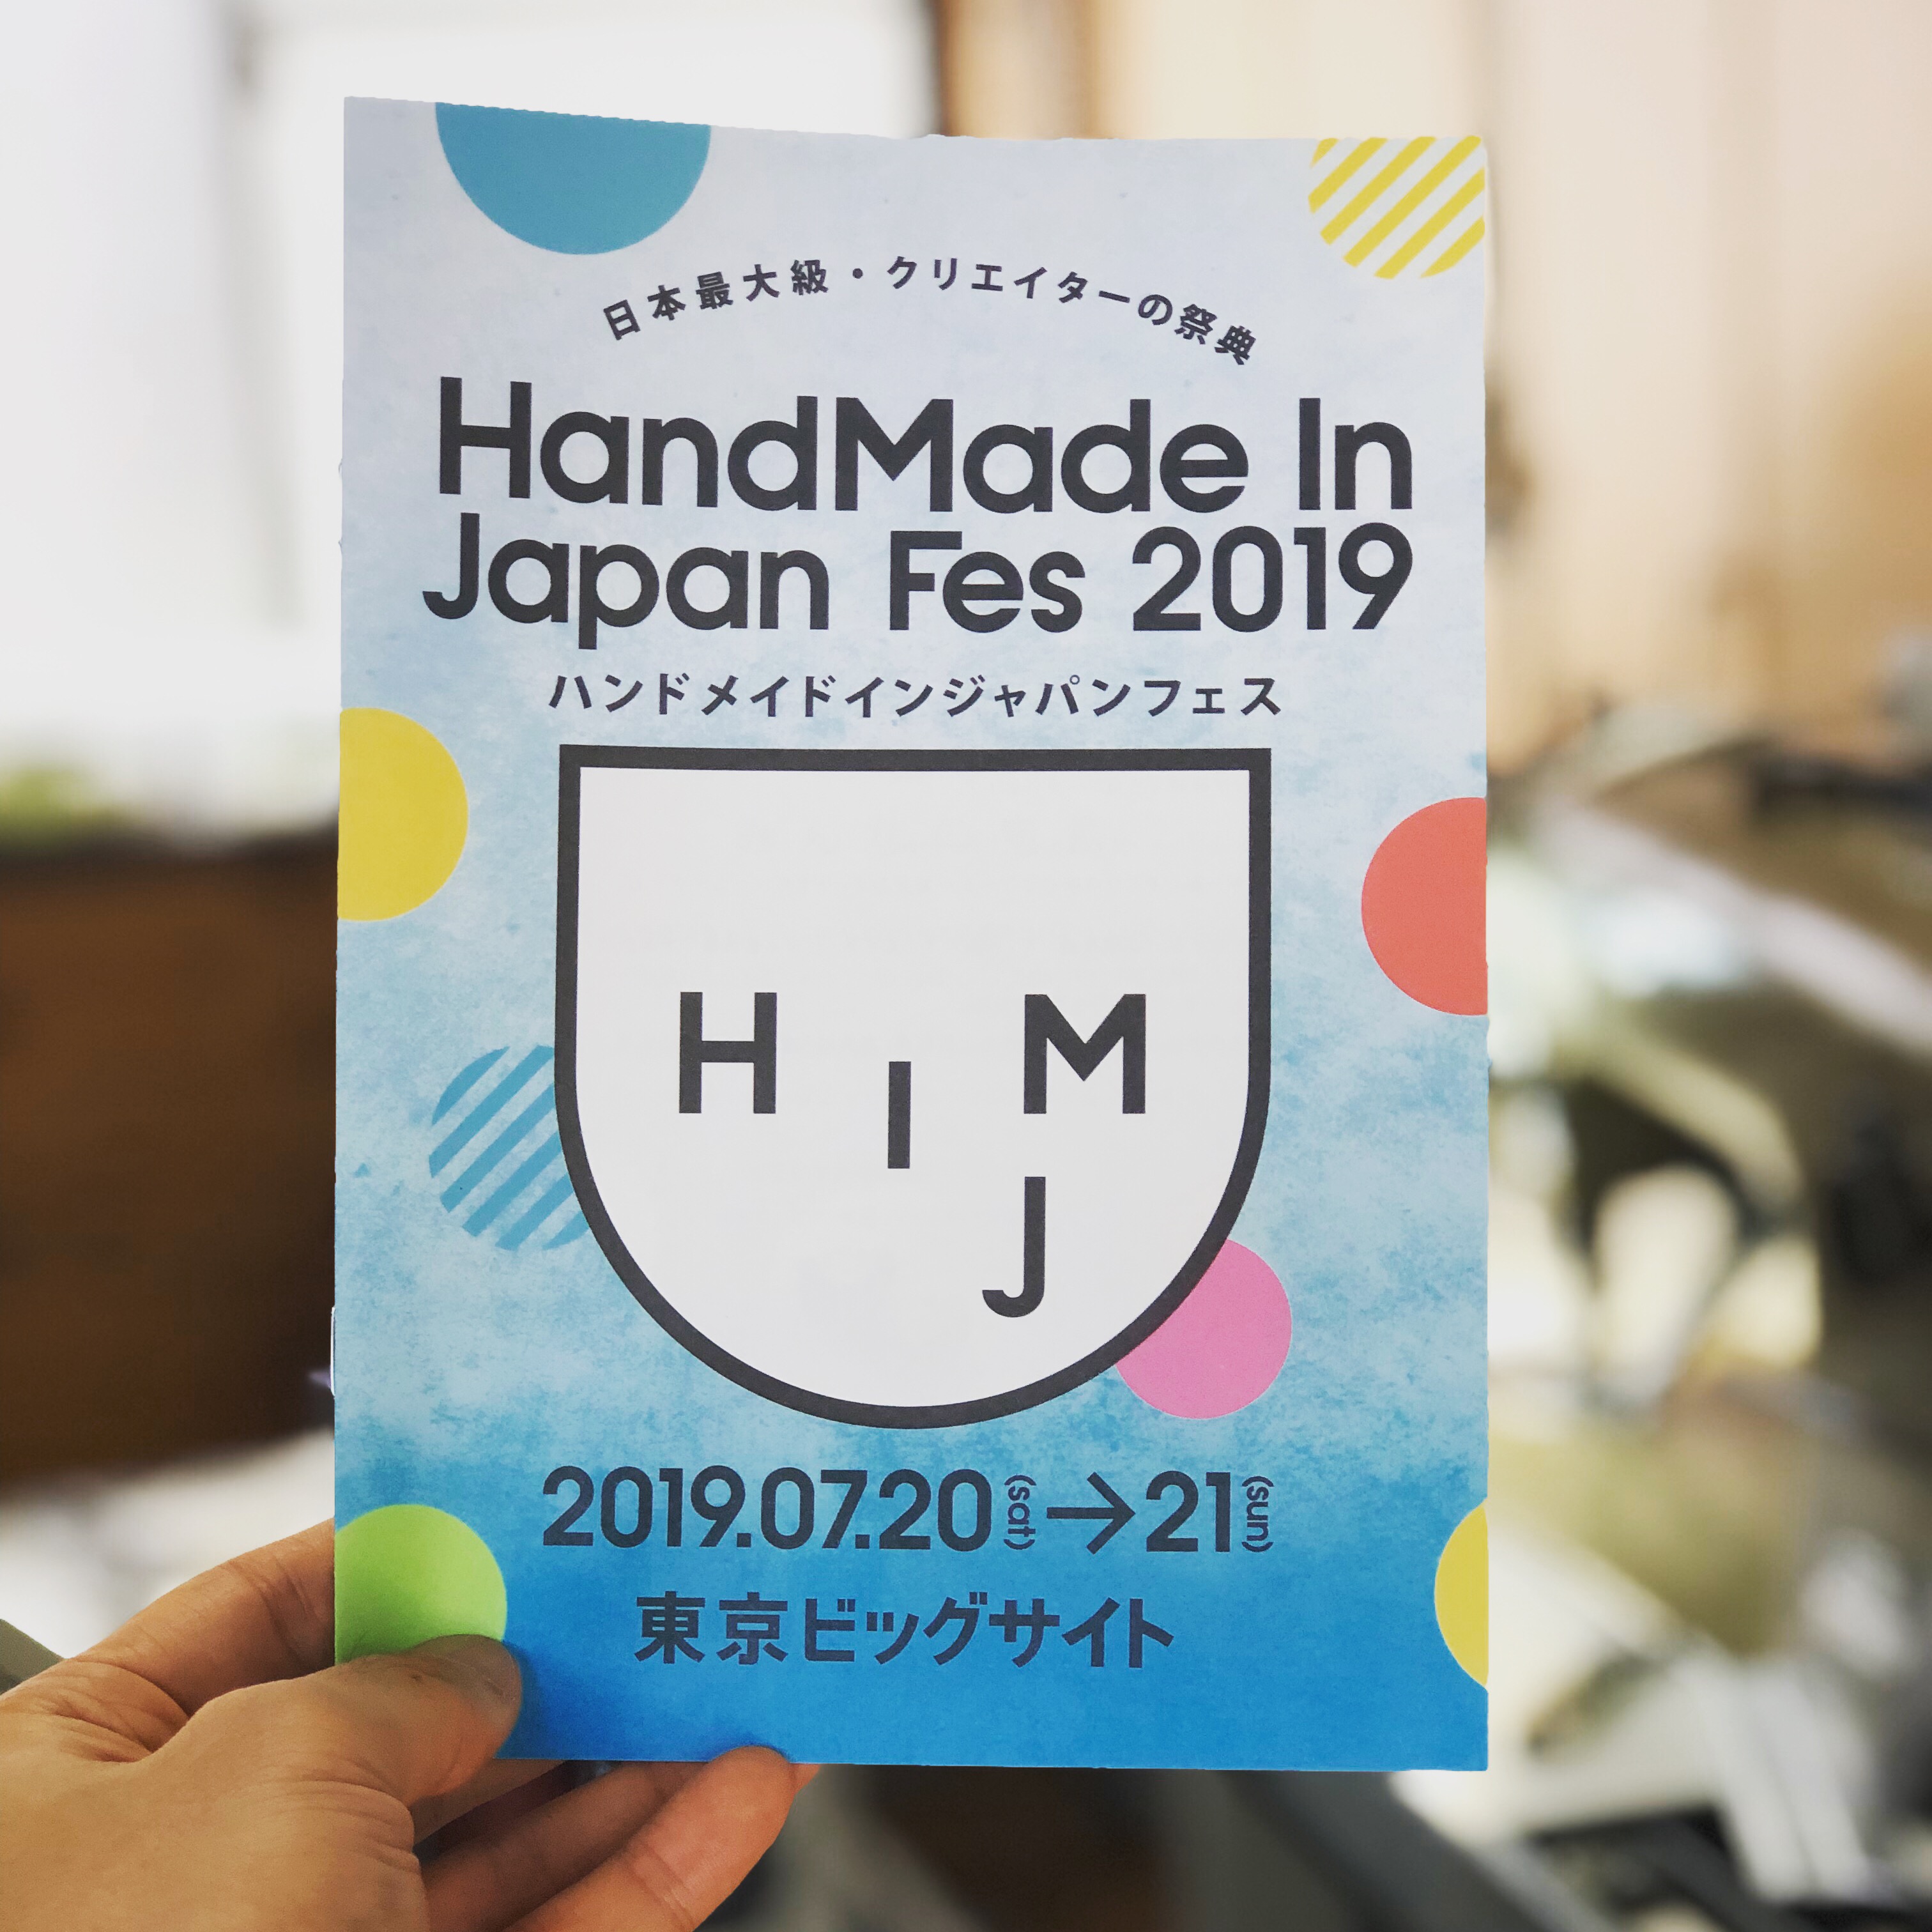 「HandMade In Japan Fes 2019」7月20日(土)・21日(日) 出店決定!!